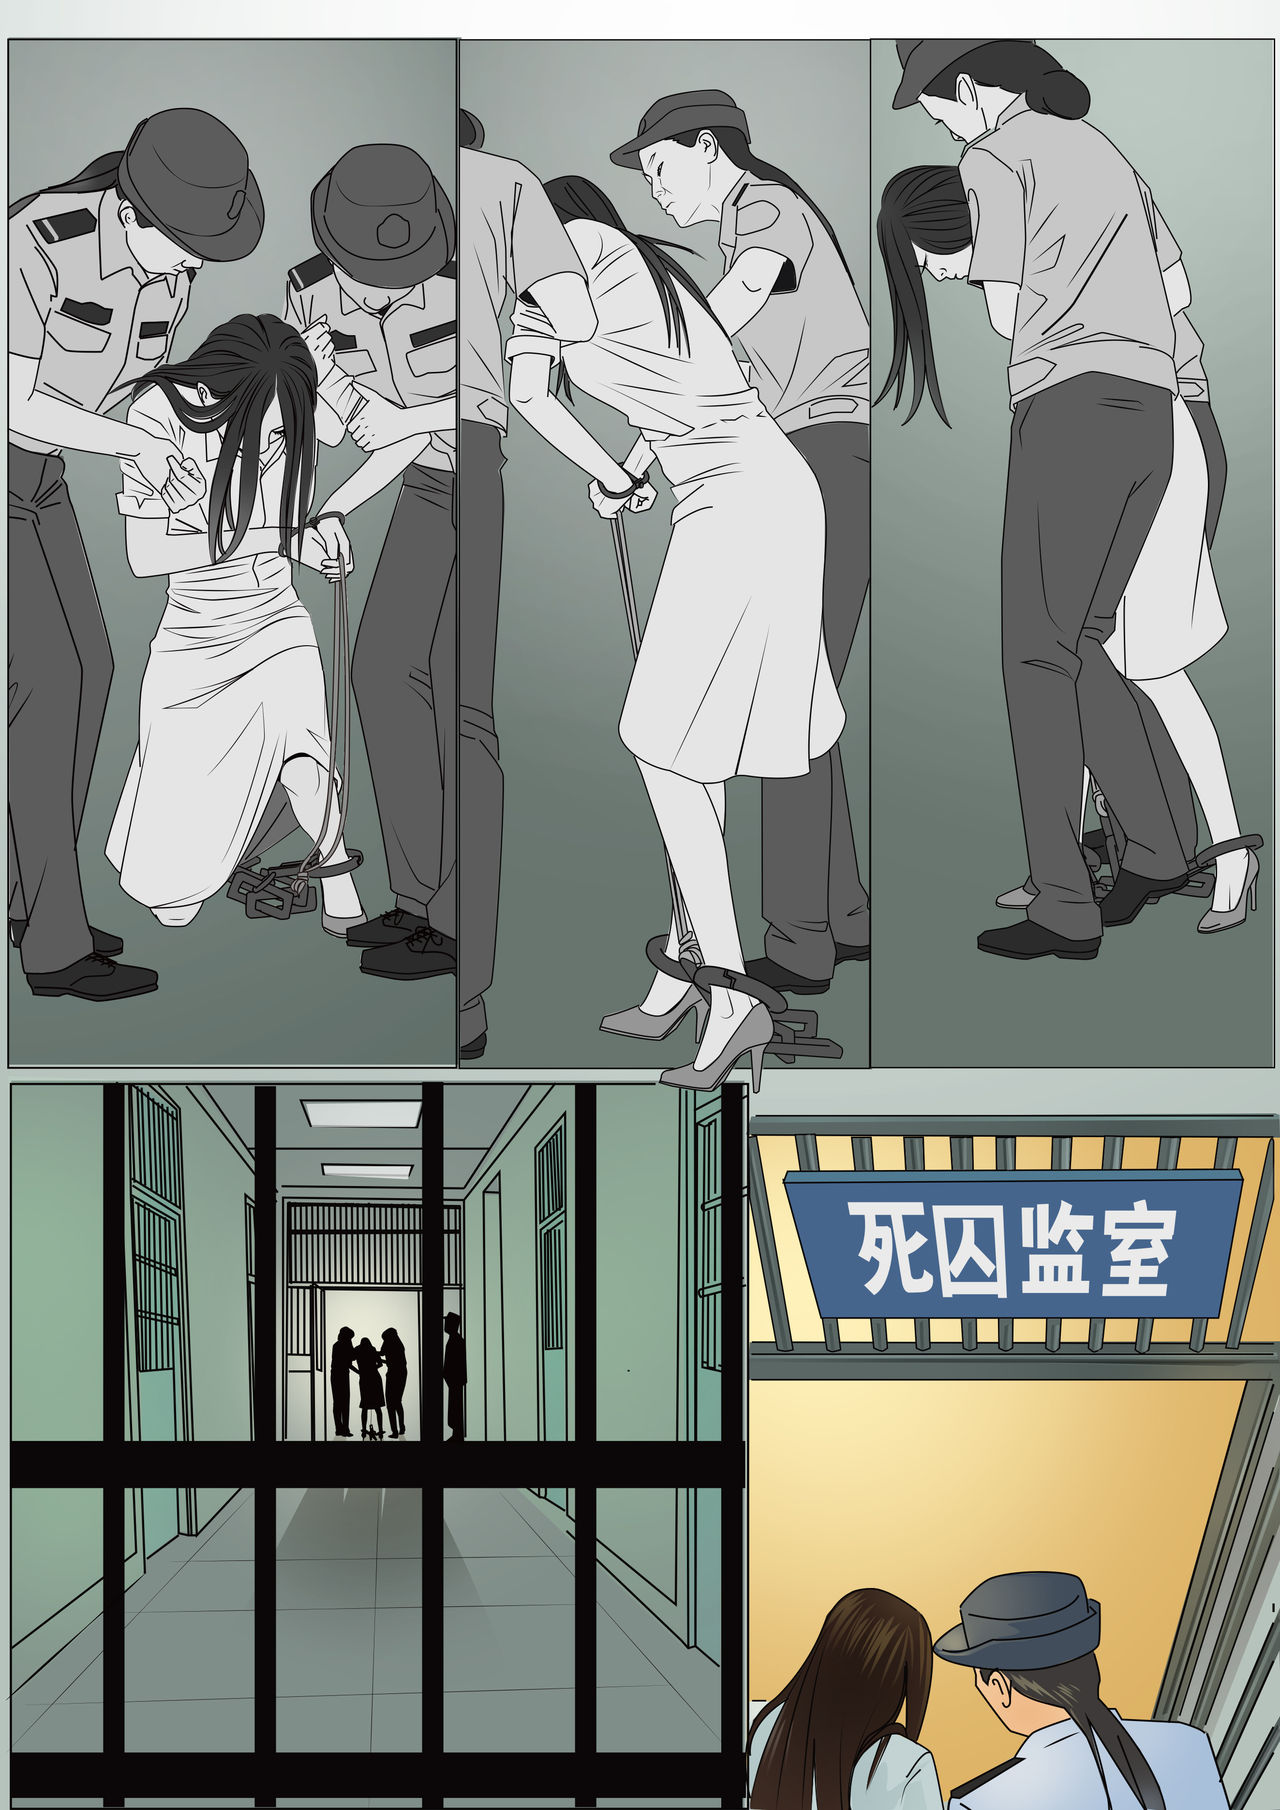 Three Female Prisoners 8  [Chinese] 极度重犯 8 惩罚与救赎